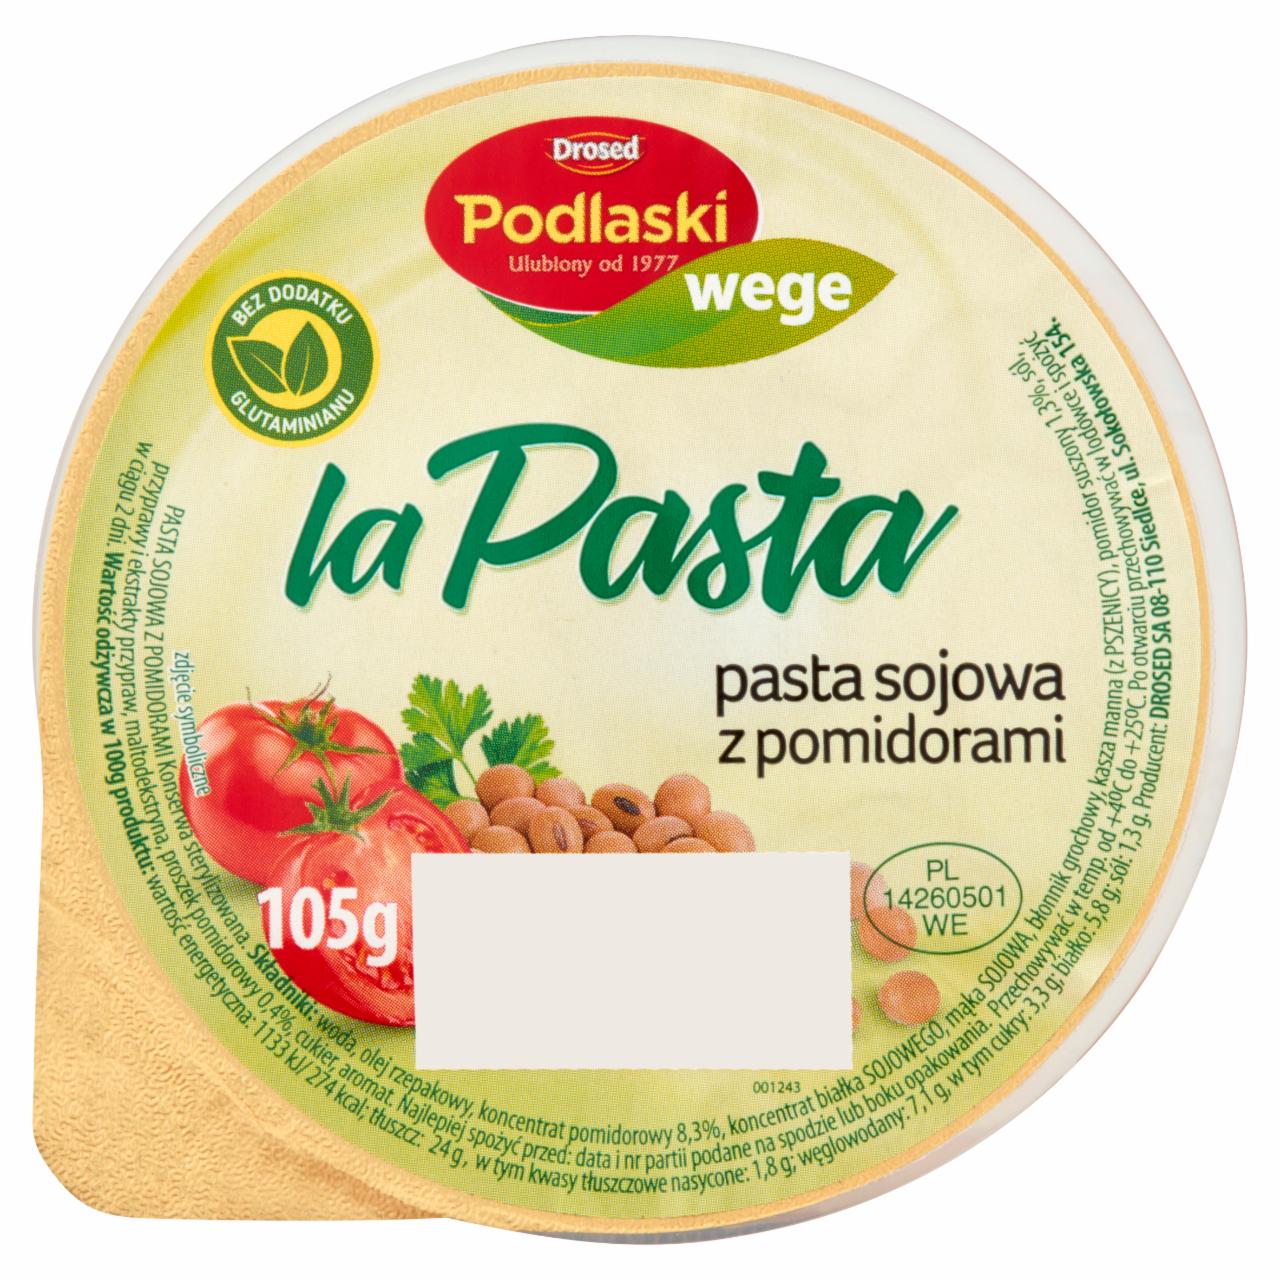 Zdjęcia - Drosed Podlaski wege la Pasta Pasta sojowa z pomidorami 105 g